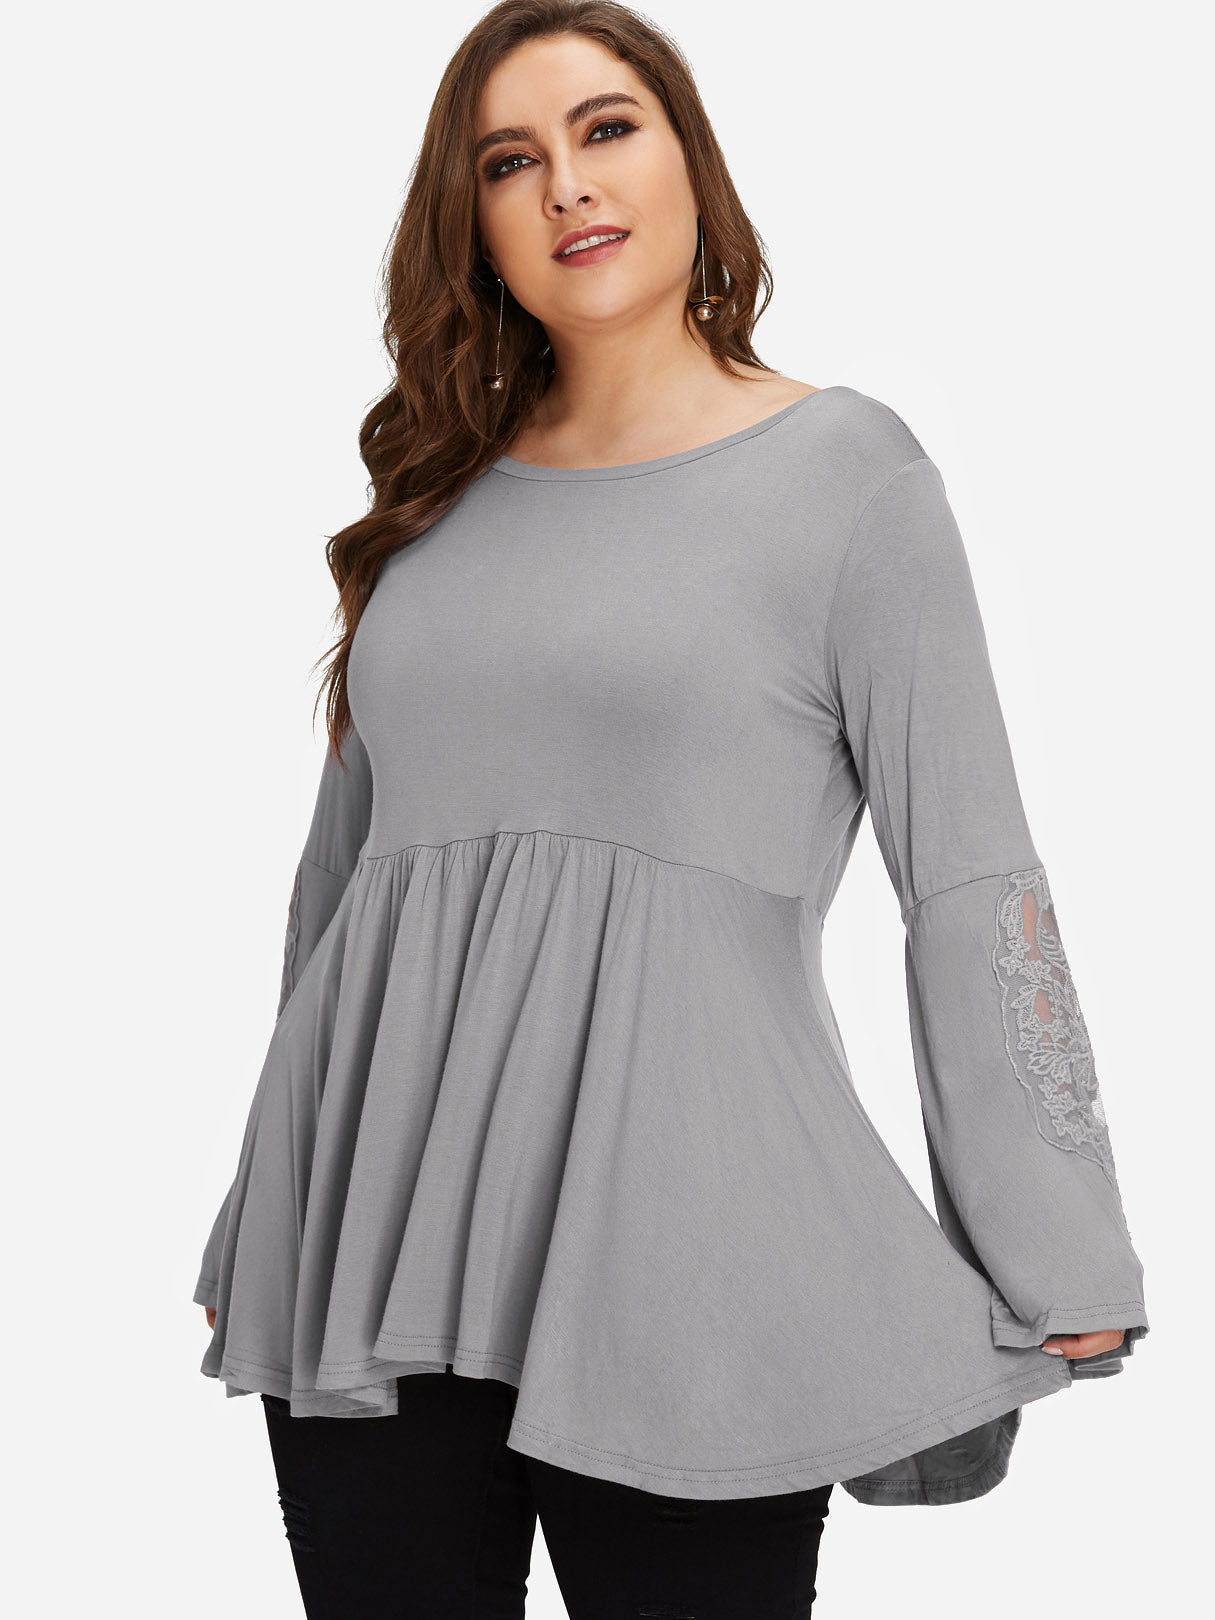 OEM Ladies Grey Plus Size Tops